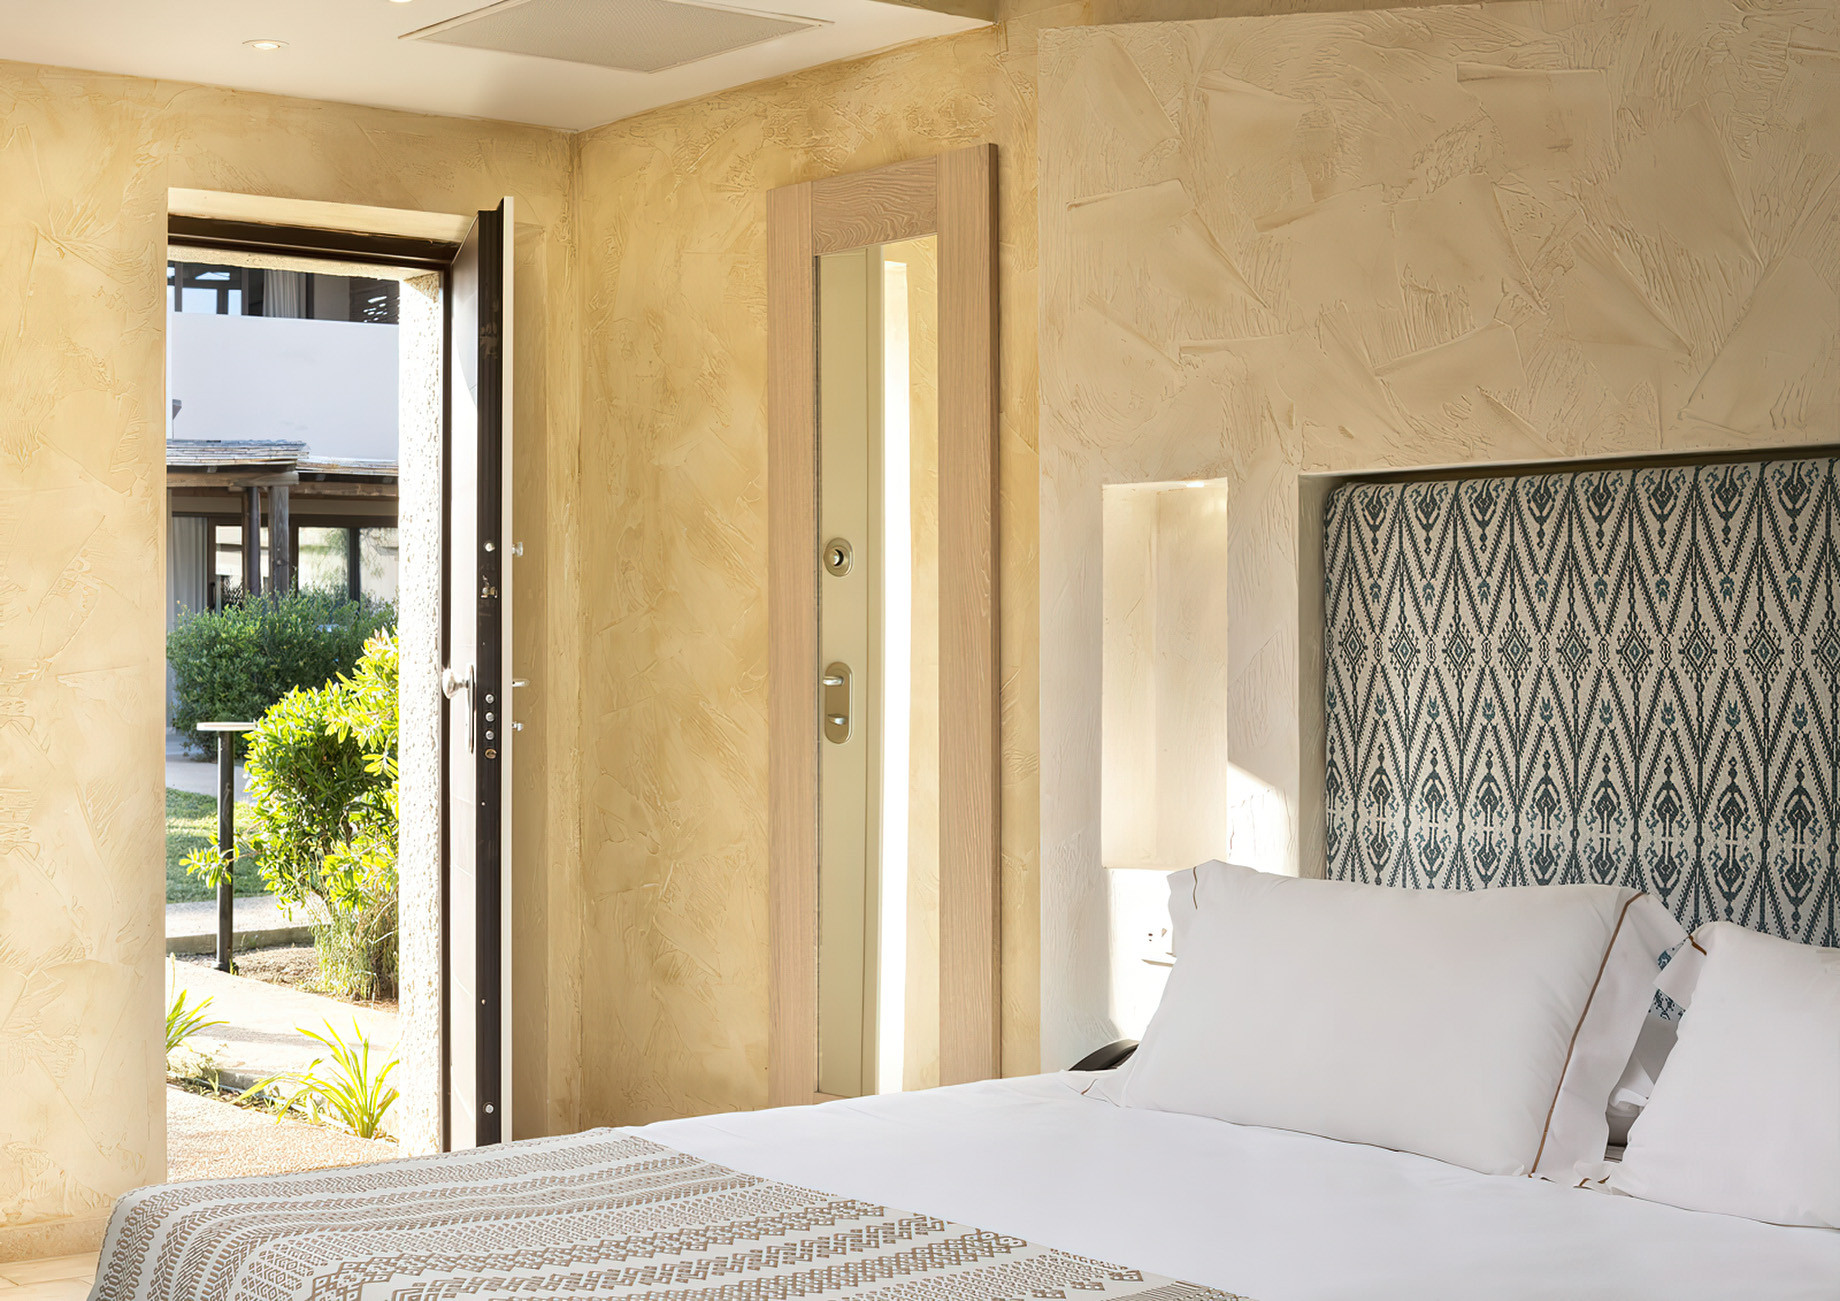 Baglioni Resort Sardinia – San Teodoro, Sardegna, Italy – Junior Suite Bed